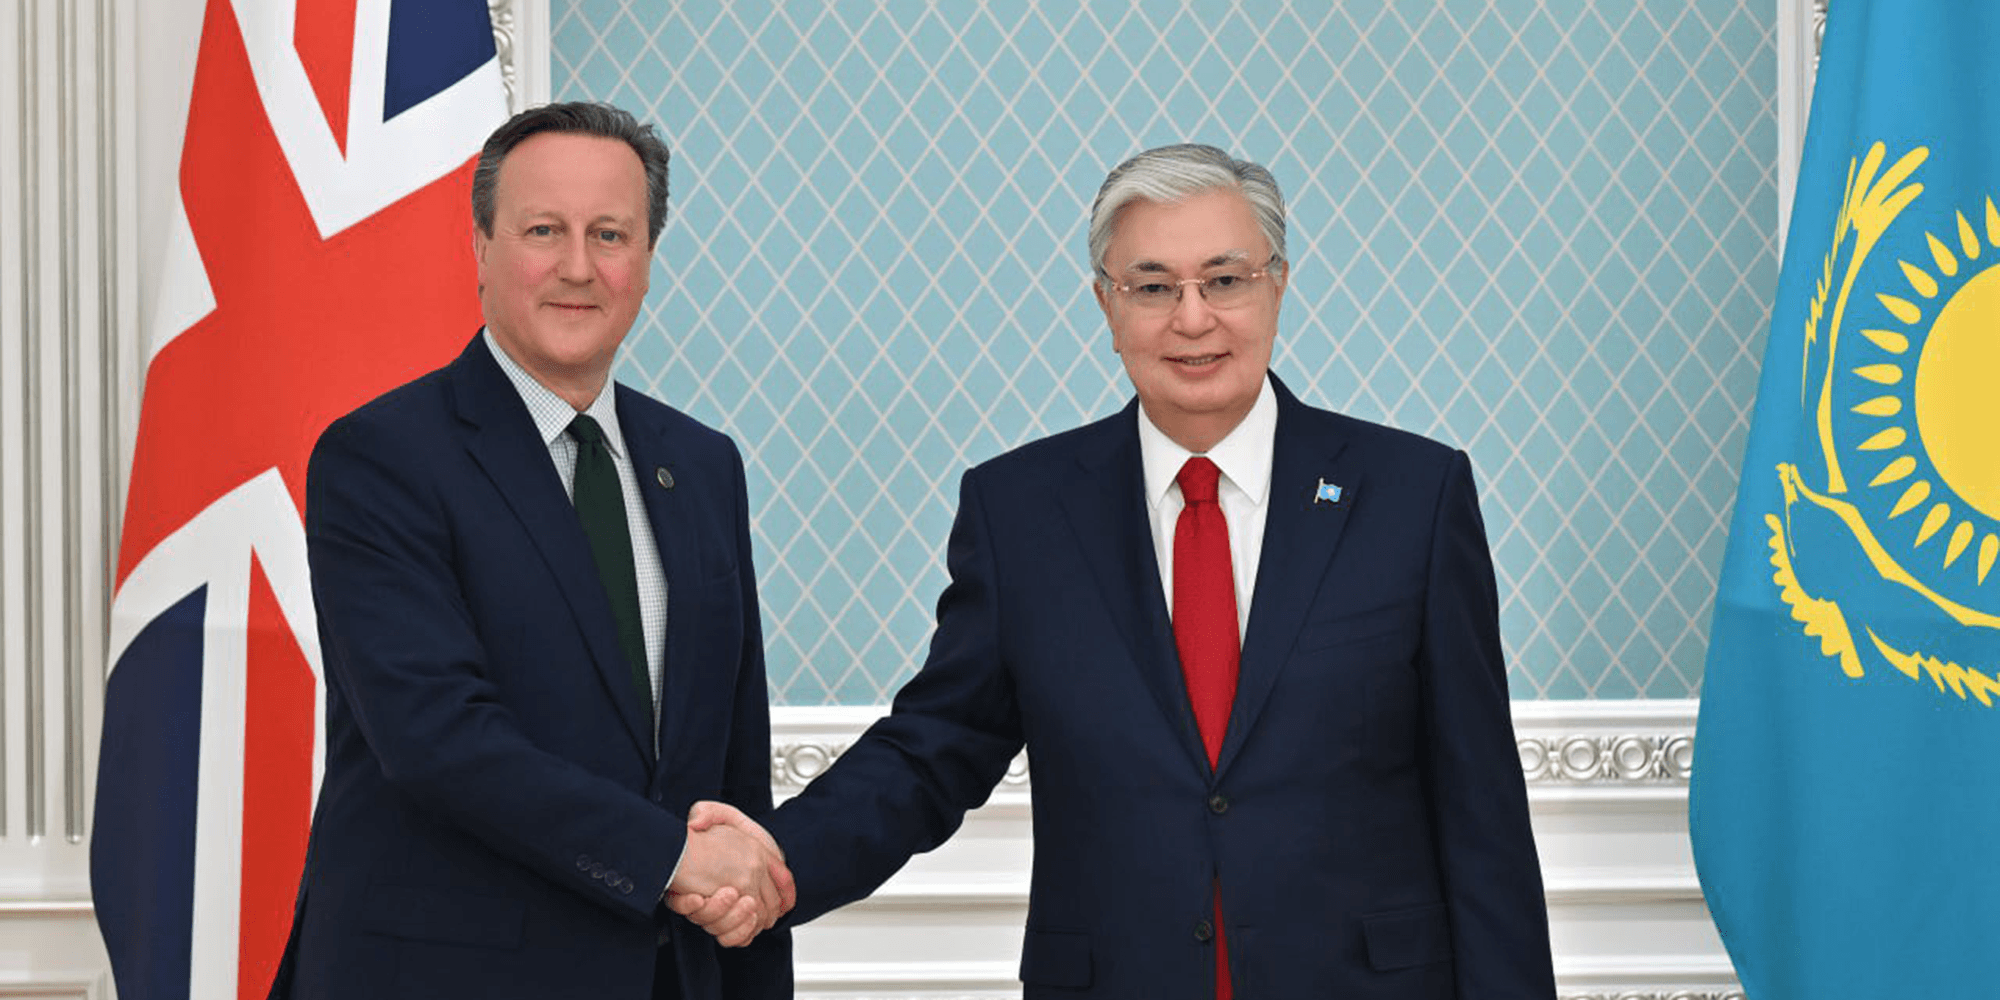 دلالات جولة وزير الخارجية البريطاني في آسيا الوسطى